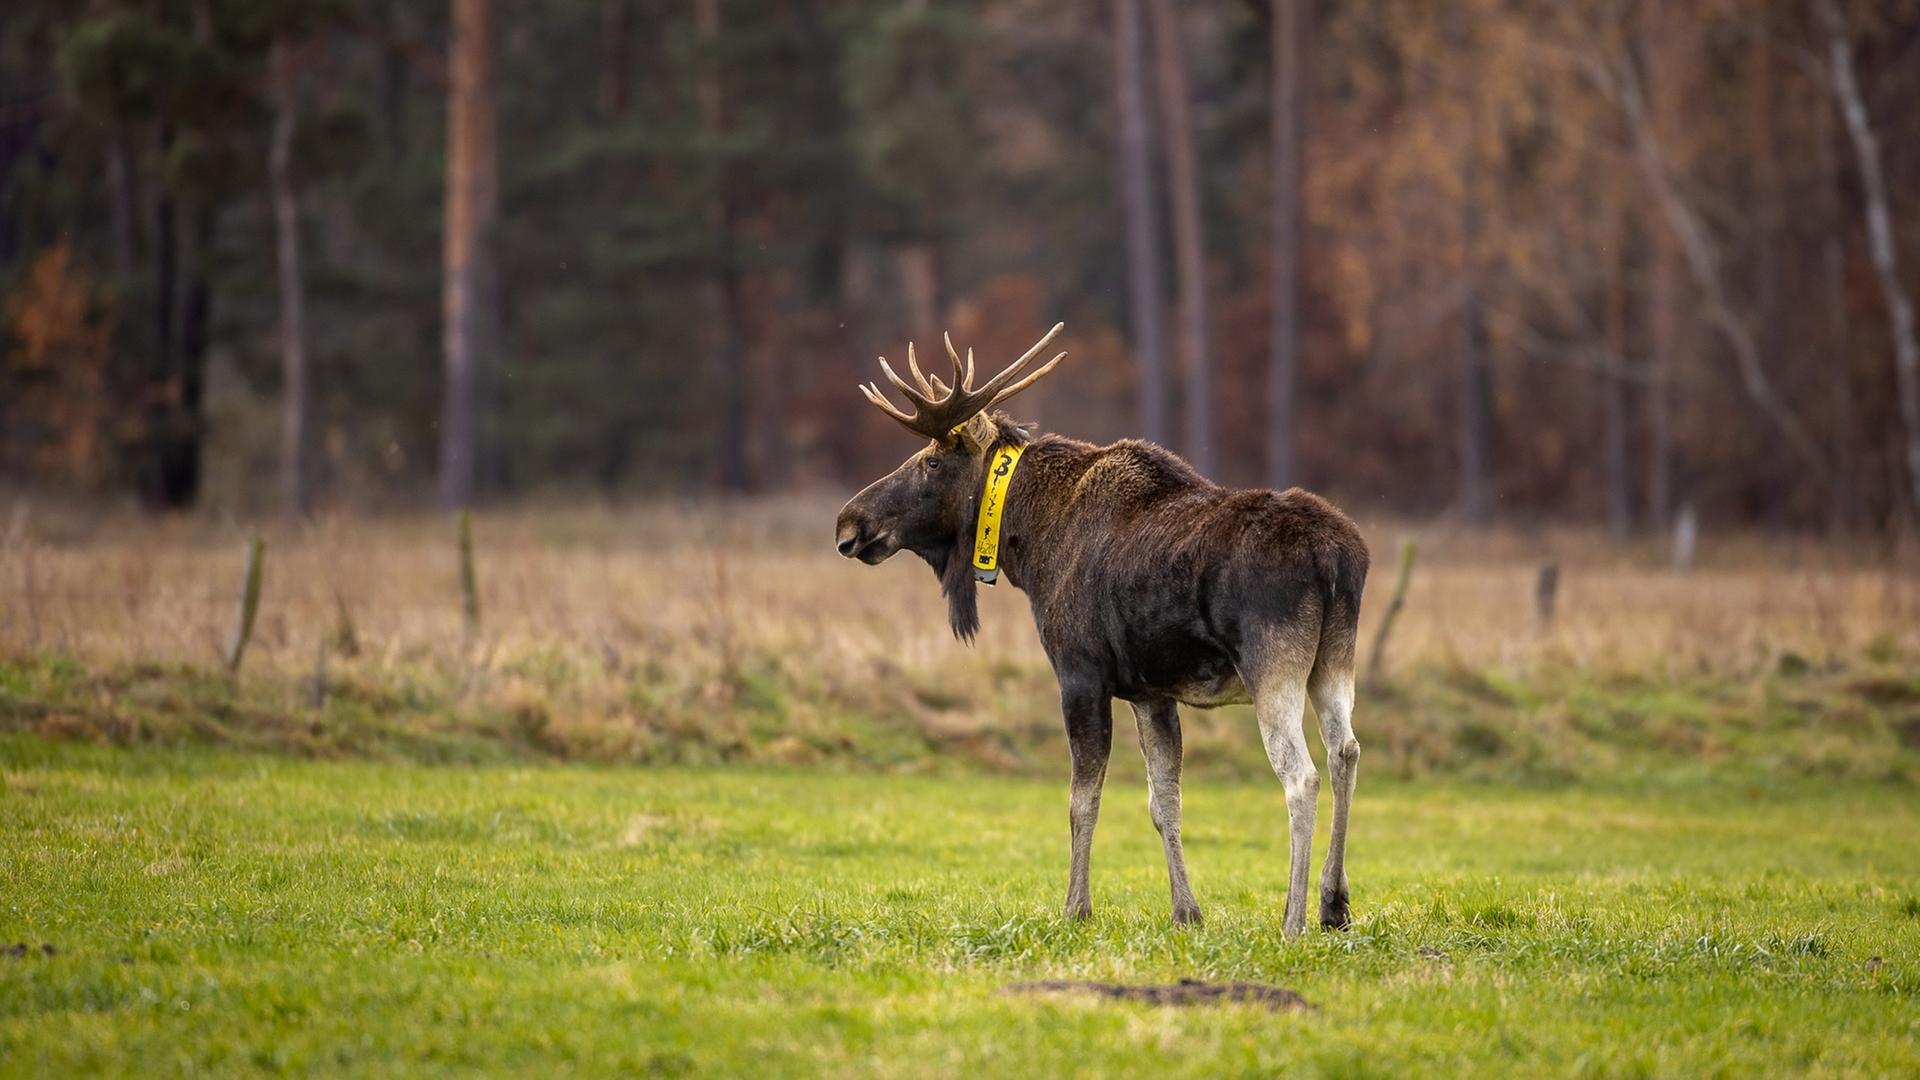 Ein Elch steht auf einer Wiese in Brandenburg. Das aus Polen stammende Tier sucht öfter die Nähe von Rindern. 2018 wurde dem Elch ein gelbes Sendehalsband angelegt, um seine Routen zu dokumentieren.